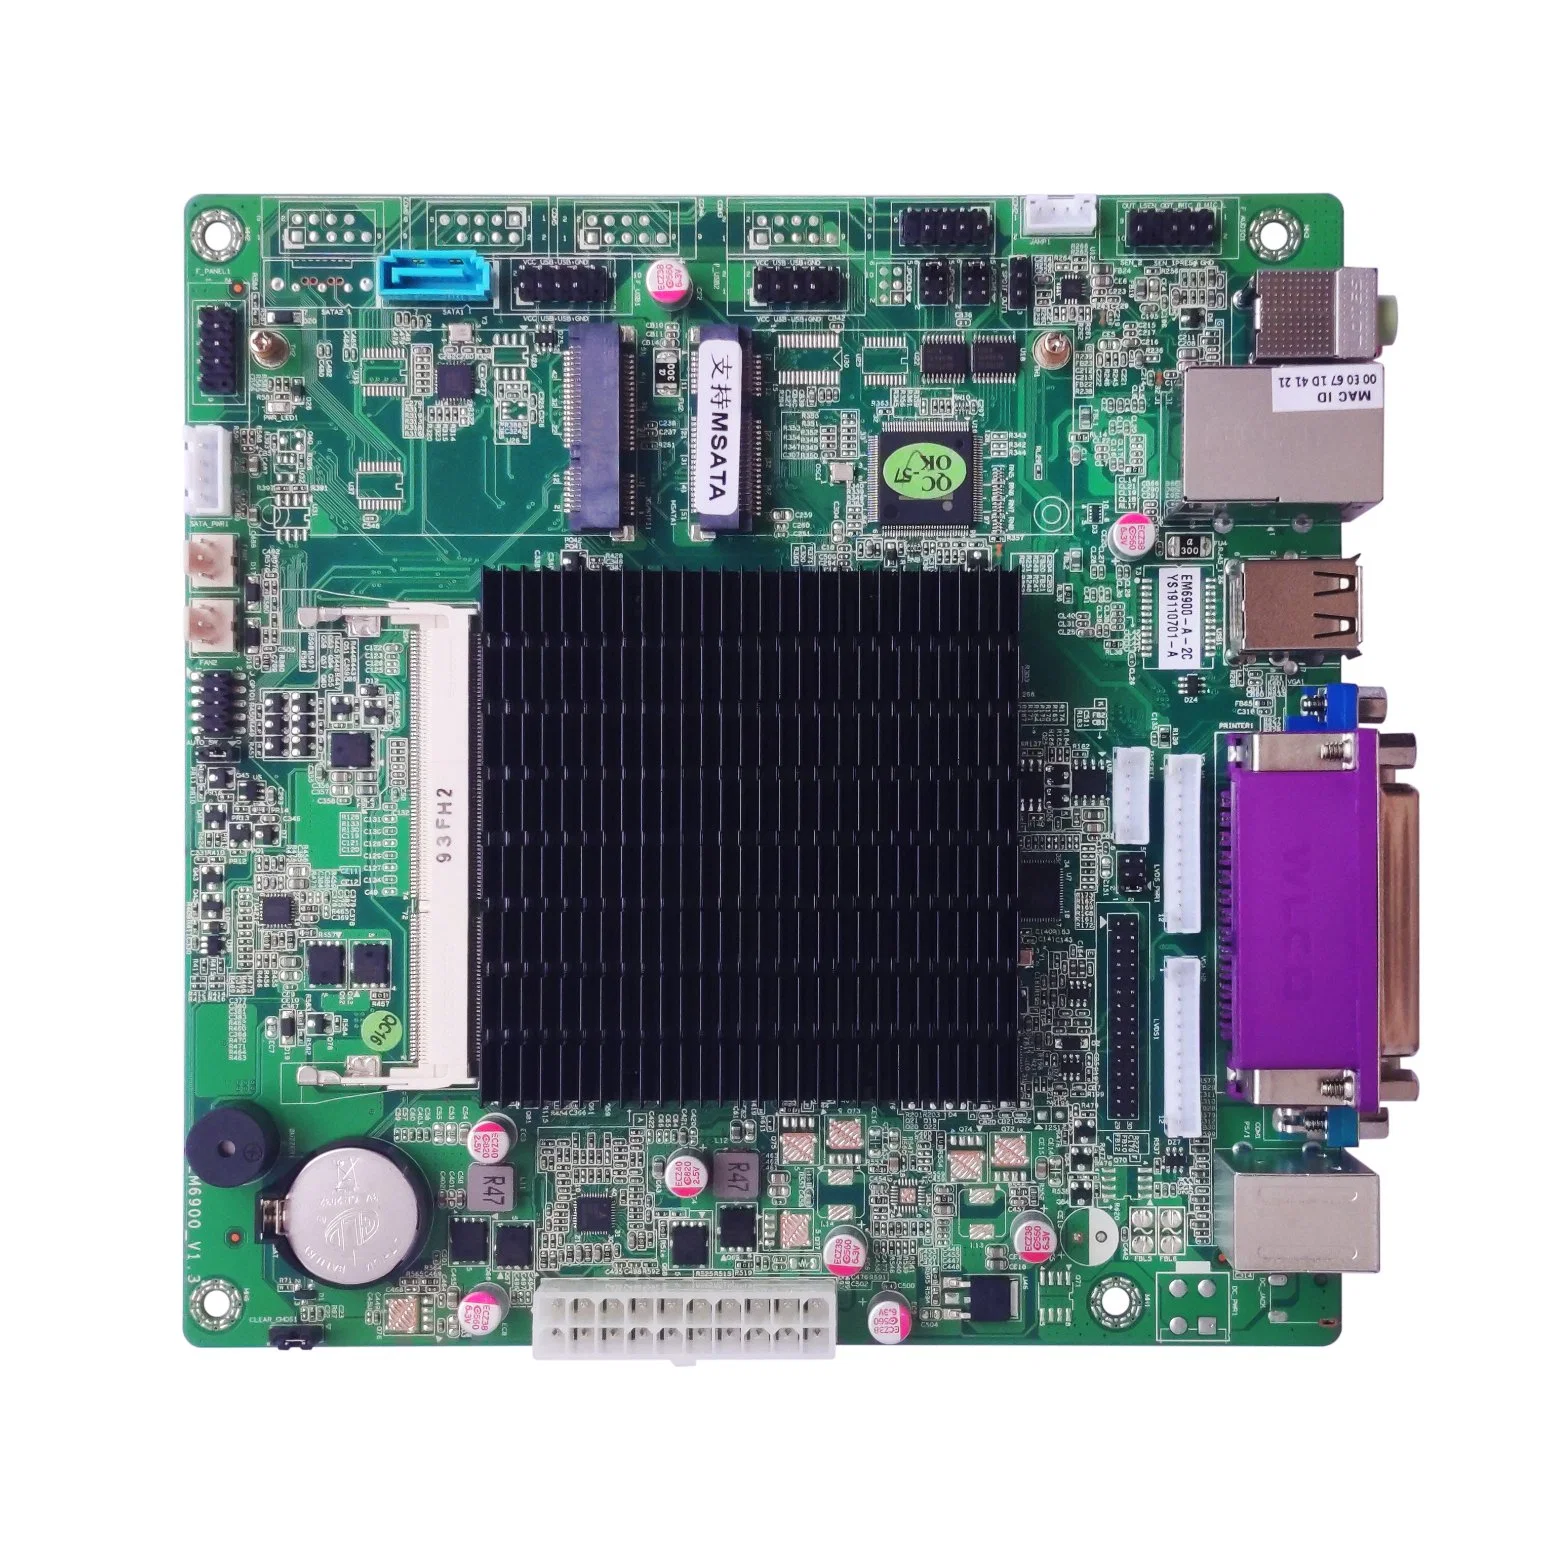 Elsky Em6900 Mini-Itx Soc системной платы набор микросхем J1900 процессоры модули памяти DDR3 макс. 8 Гбайт оперативной памяти SATA3.0 средство MSAT Realtek 8111e 1000м сетевой блок питания ATX